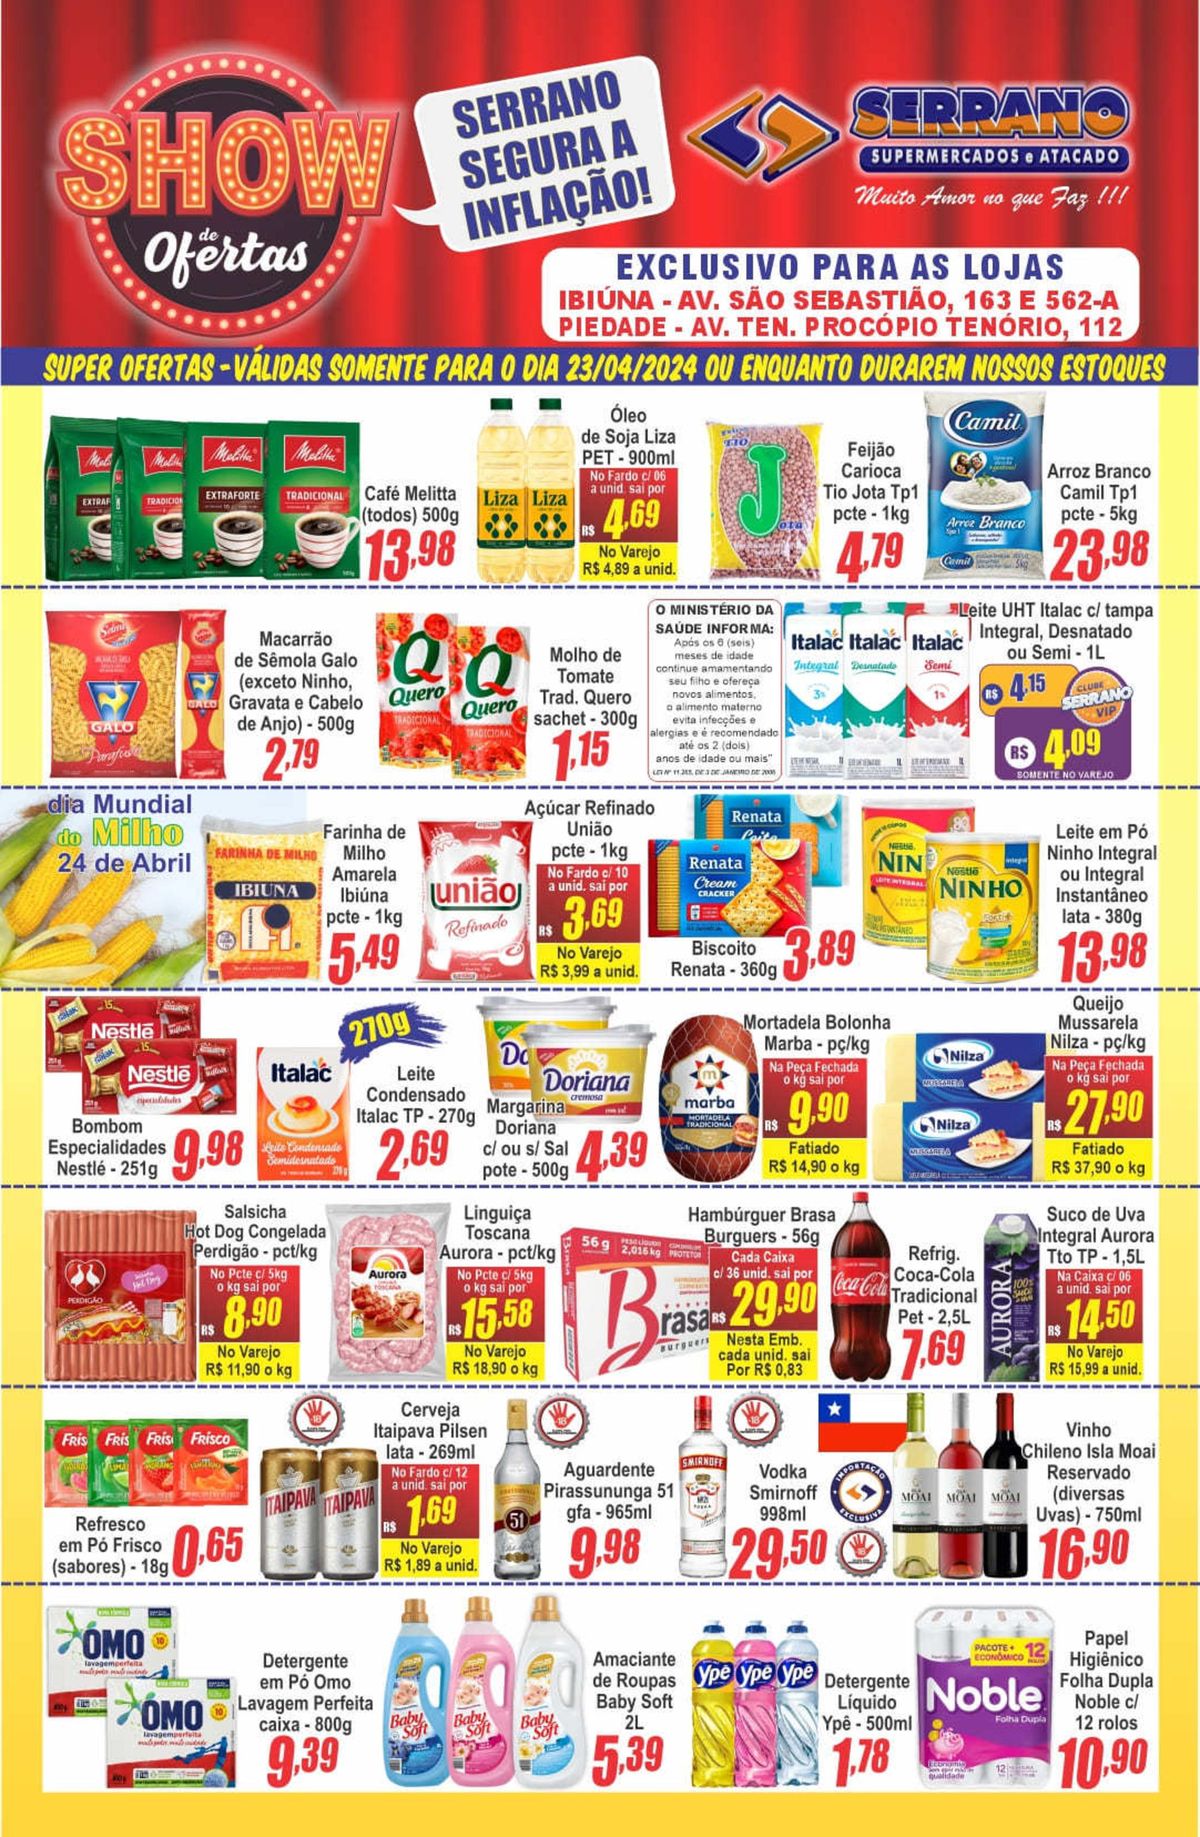 Ofertas de Supermercado e Promoções Especiais, Ofertas Serrano Supermercado, 30-04-2024, Serrano Su